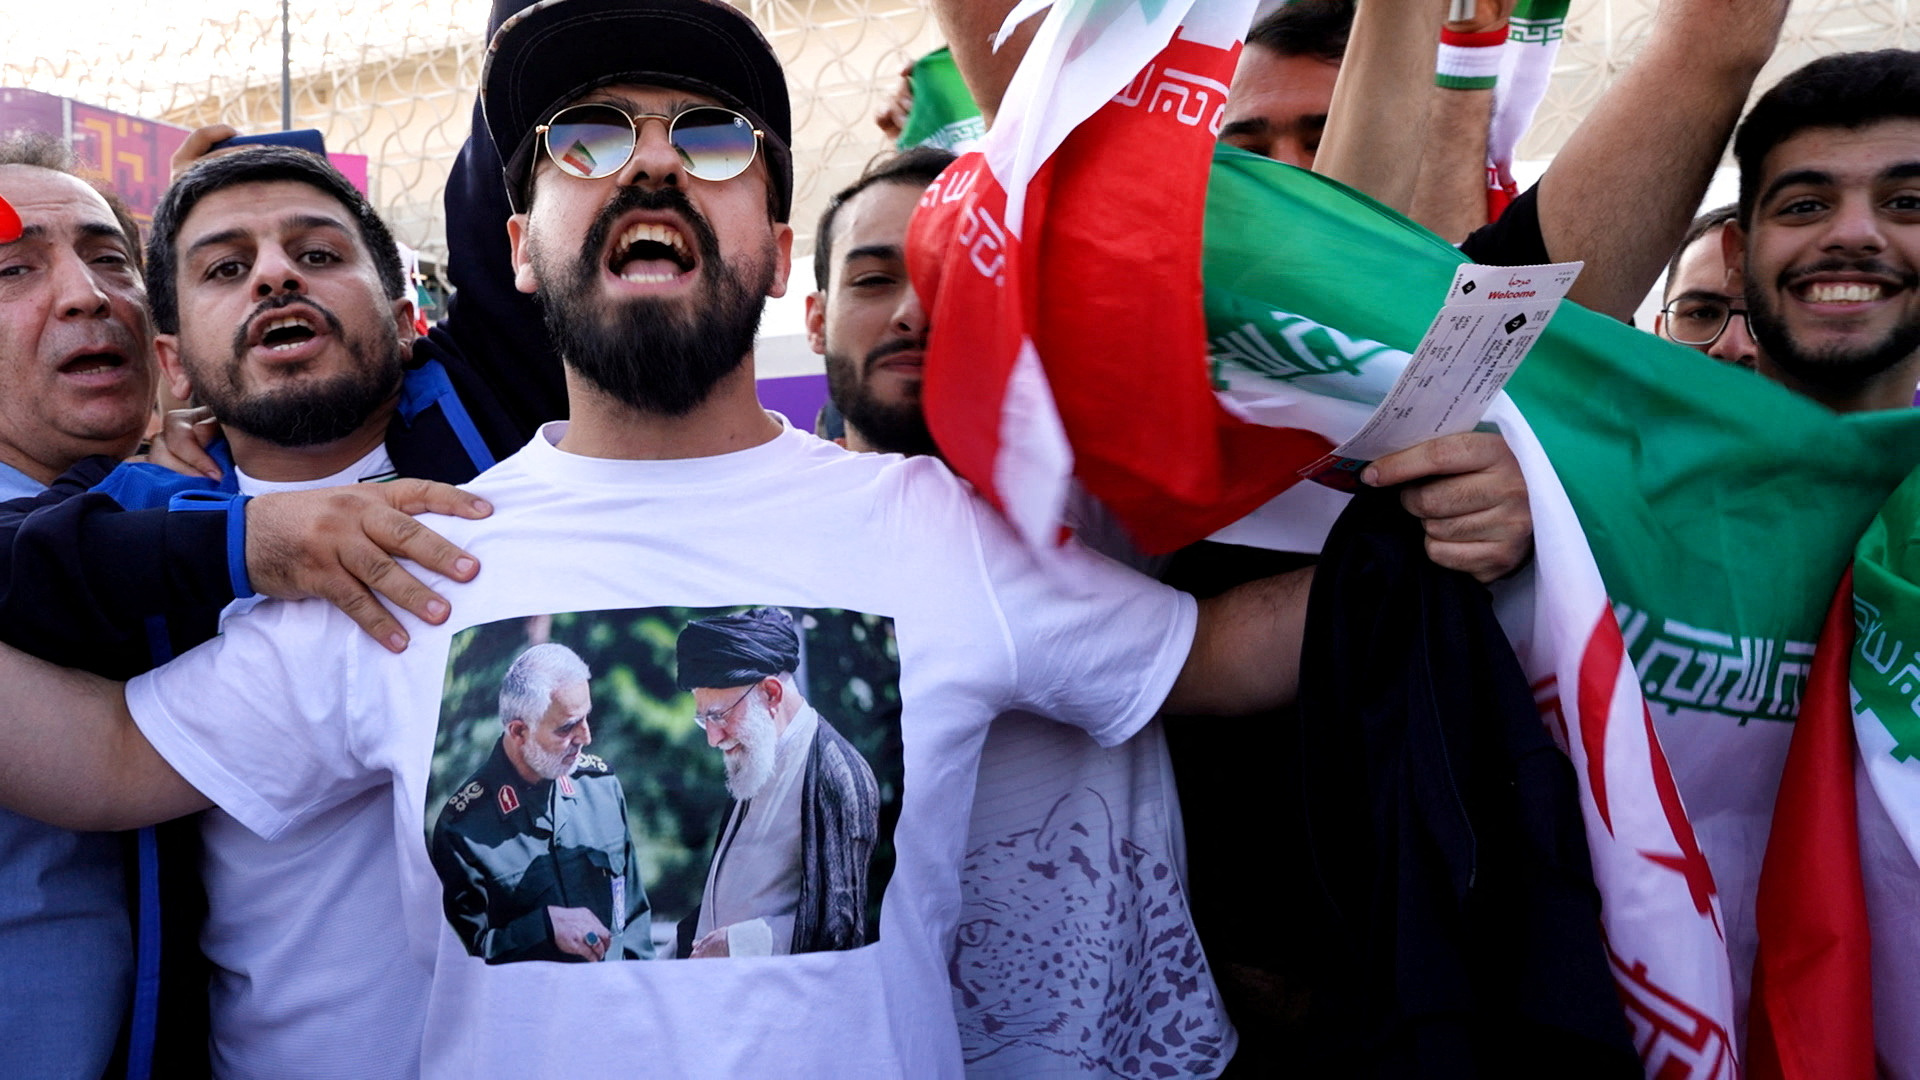 Iraníes en Qatar apoyan al Ayatollah. Habrían sido enviados por el régimen (Reuters)